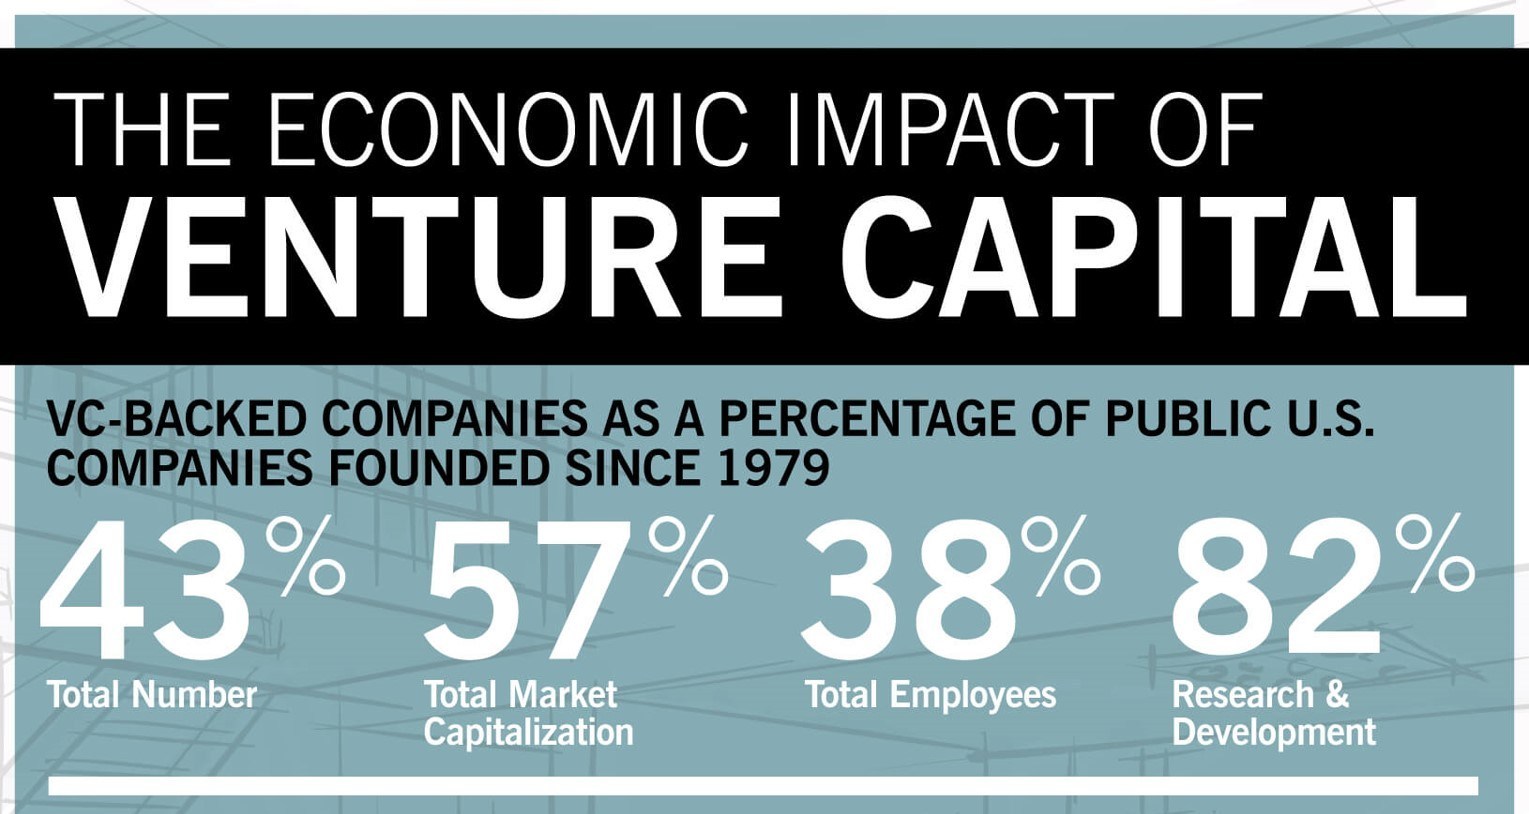 Venture Capital: evidenze sull’impatto economico e sociale